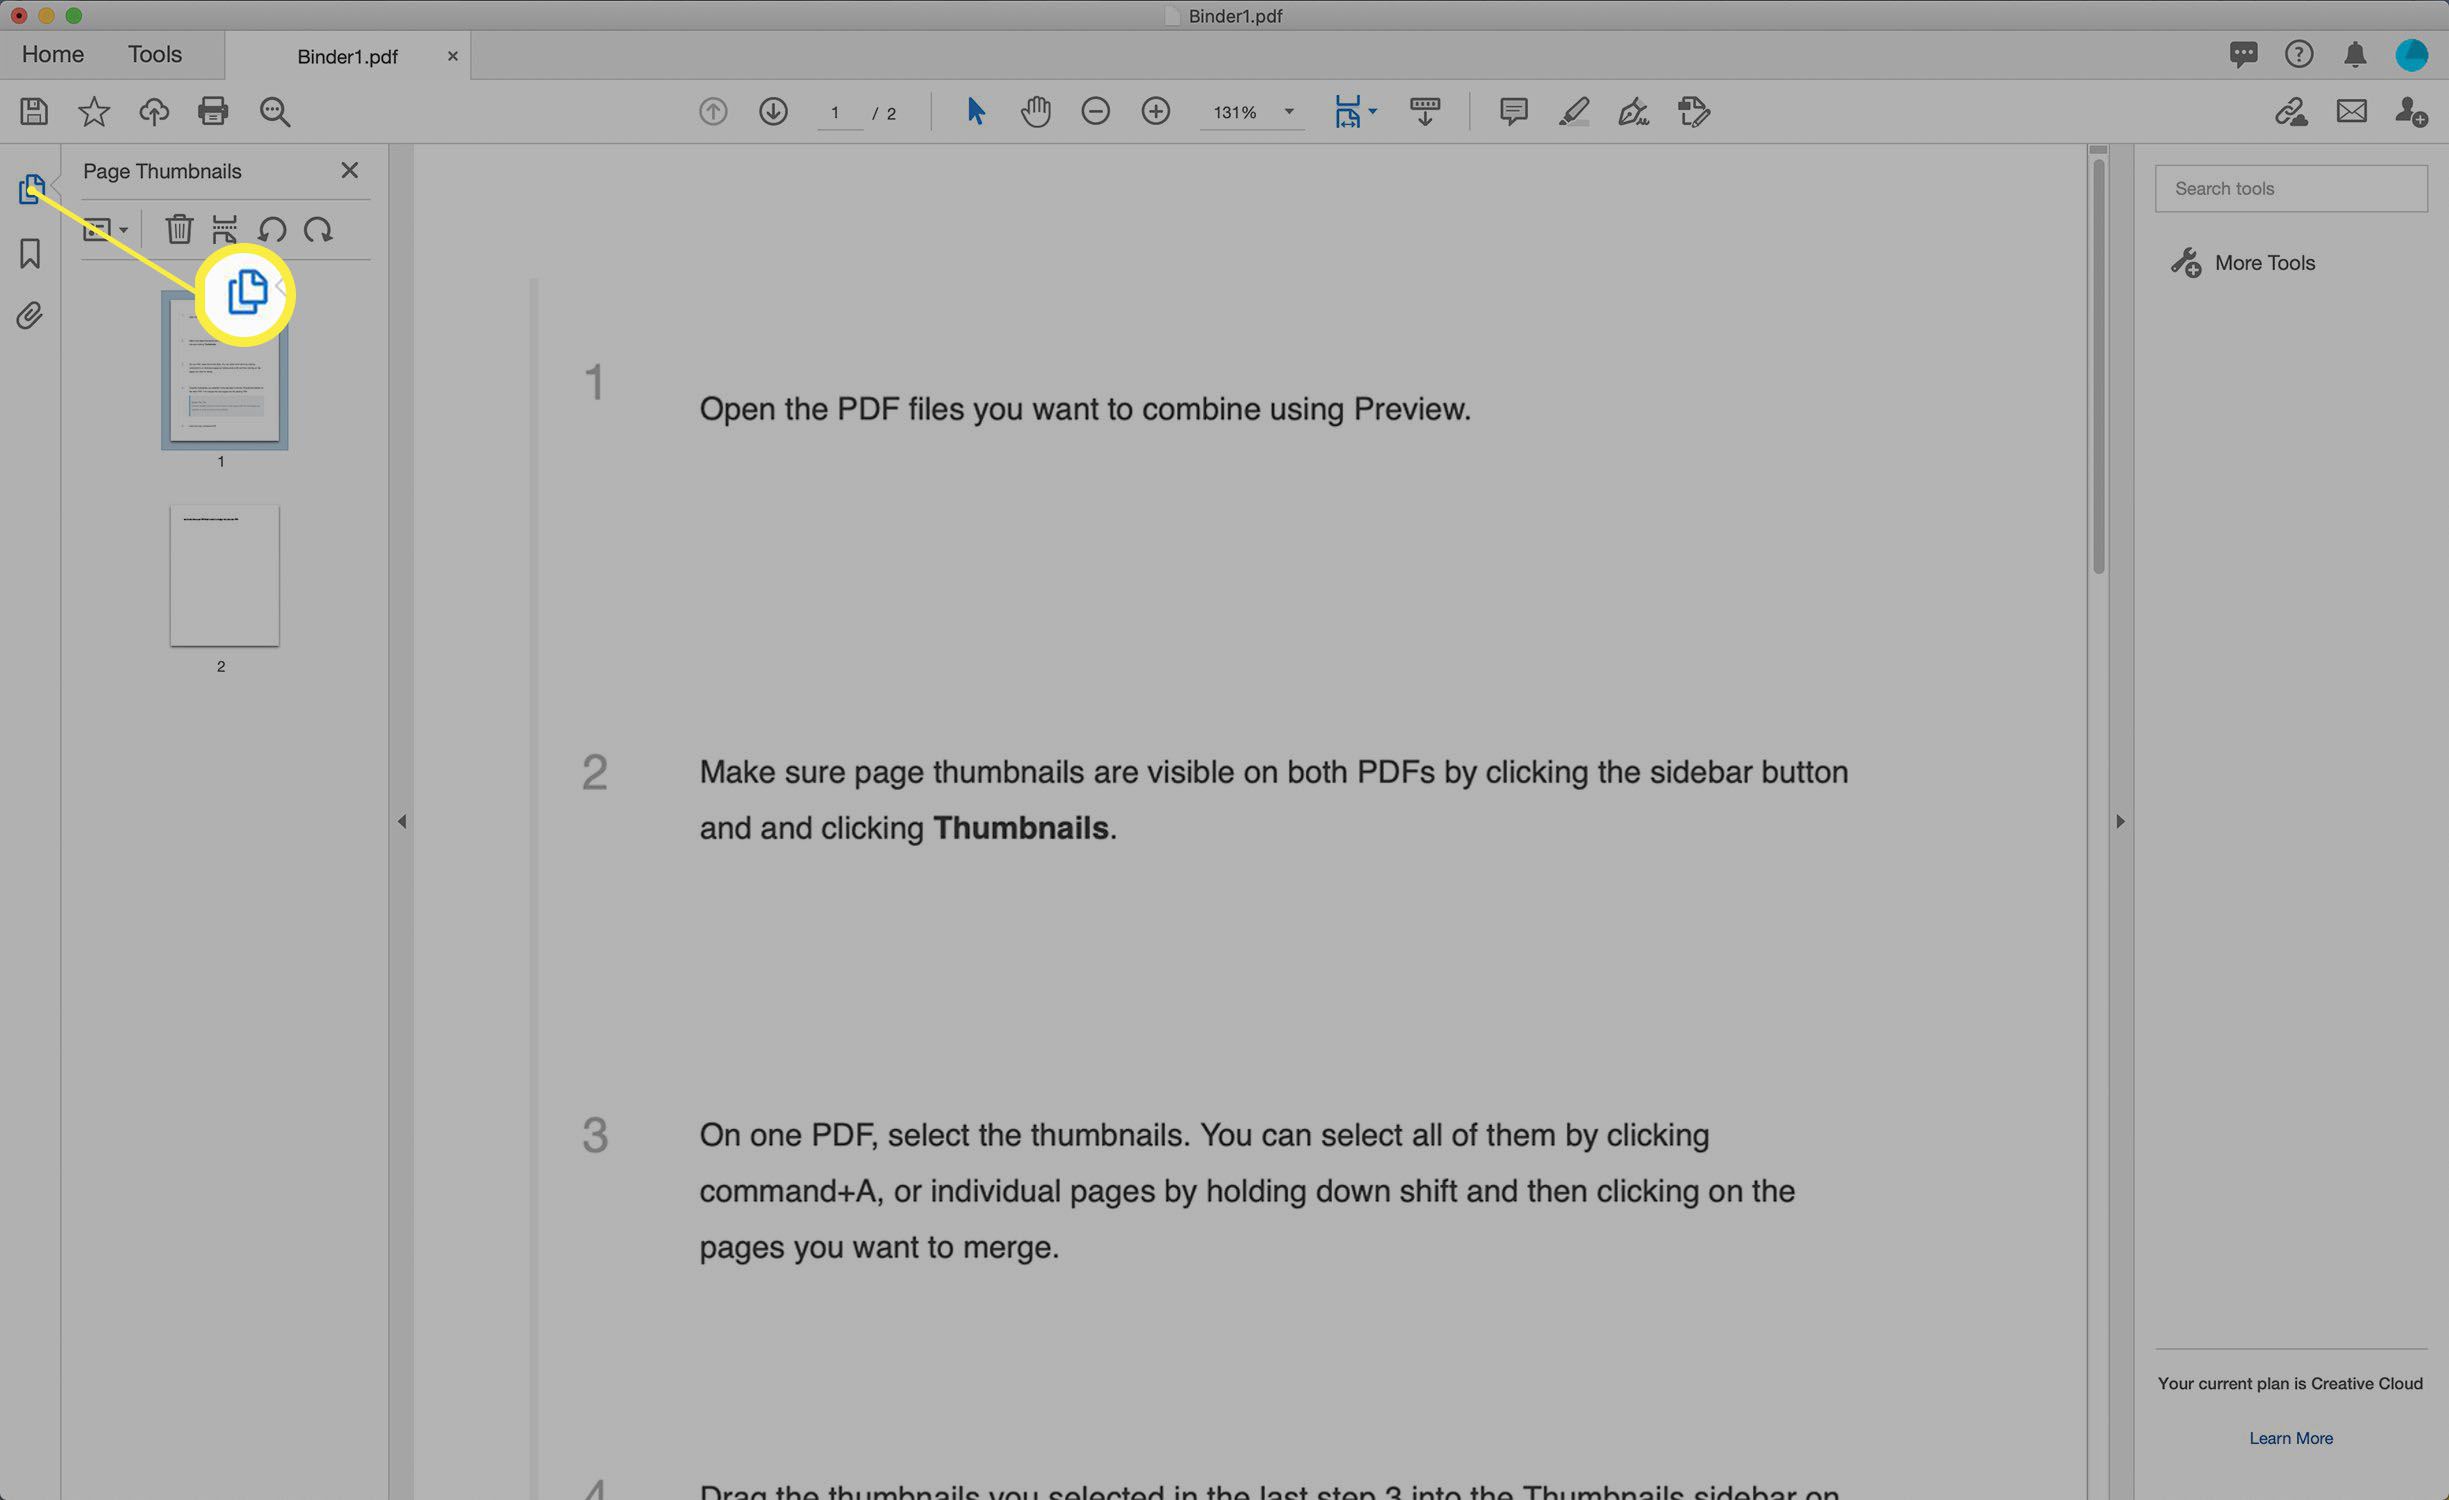 Schermafbeelding van de weergave Paginaminiaturen van een PDF in Adobe Acrobat.